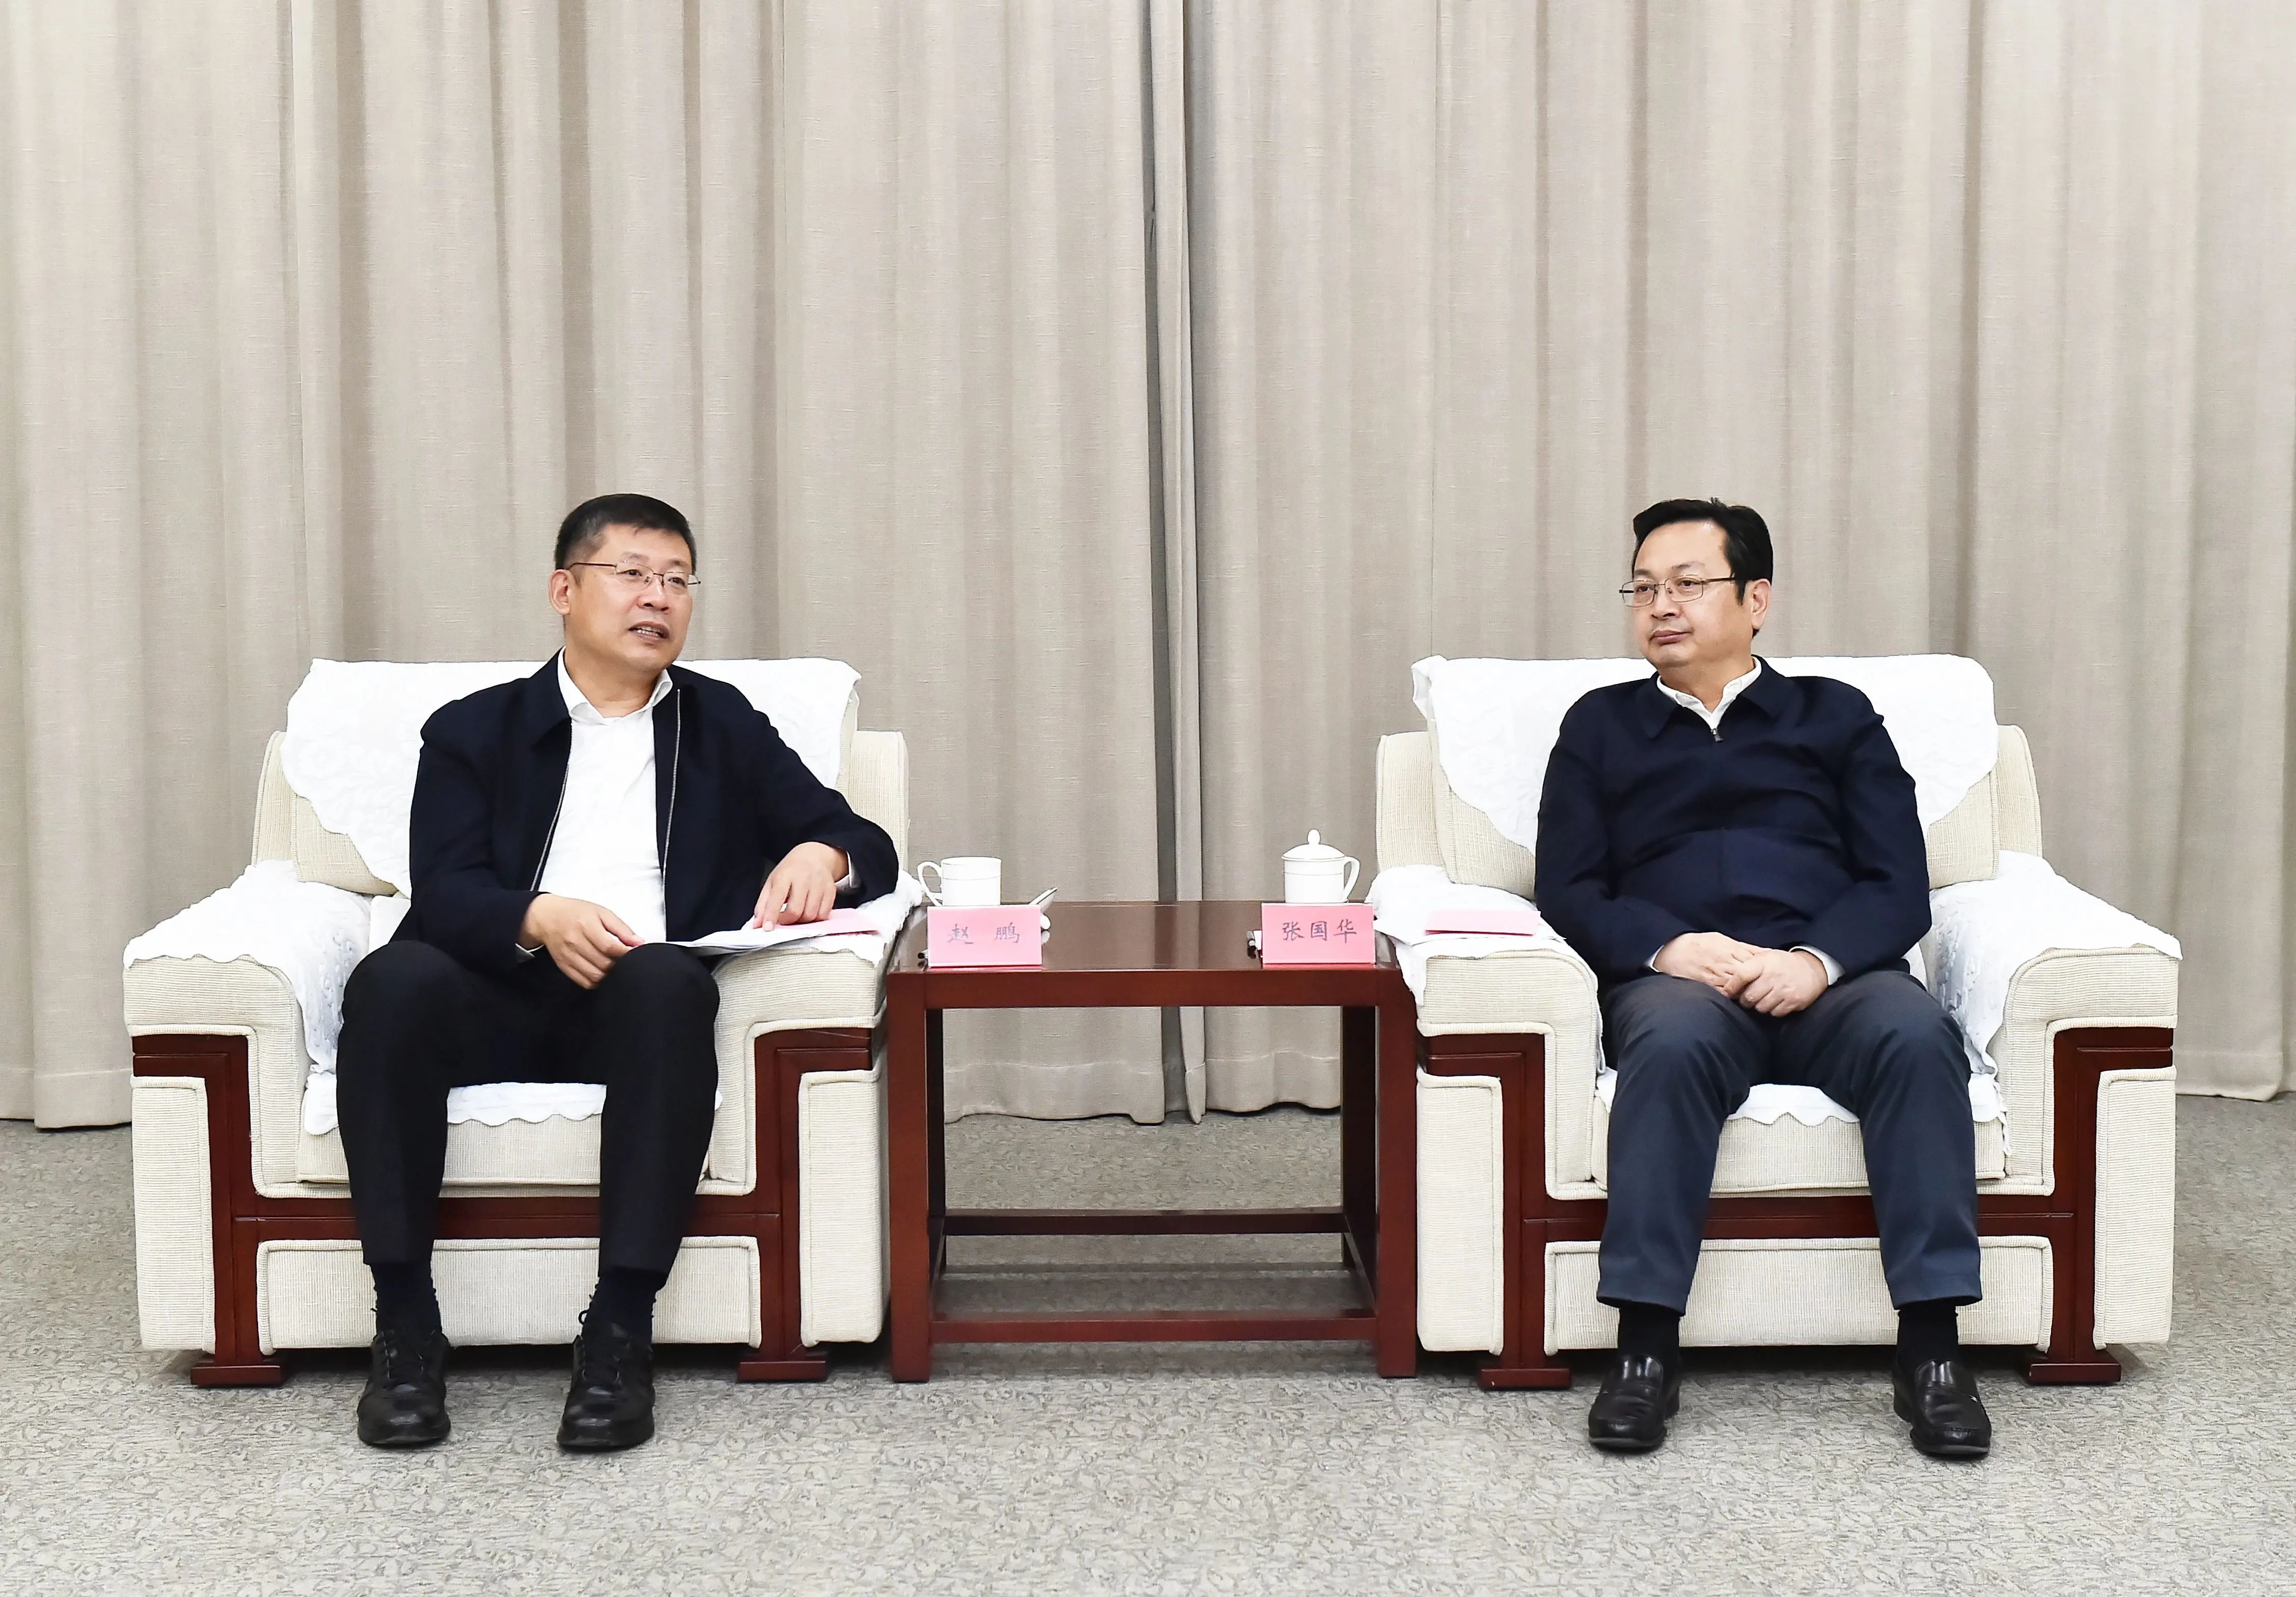 张国华与中国人保集团党委副书记赵鹏一行举行工作座谈。刘向阳摄